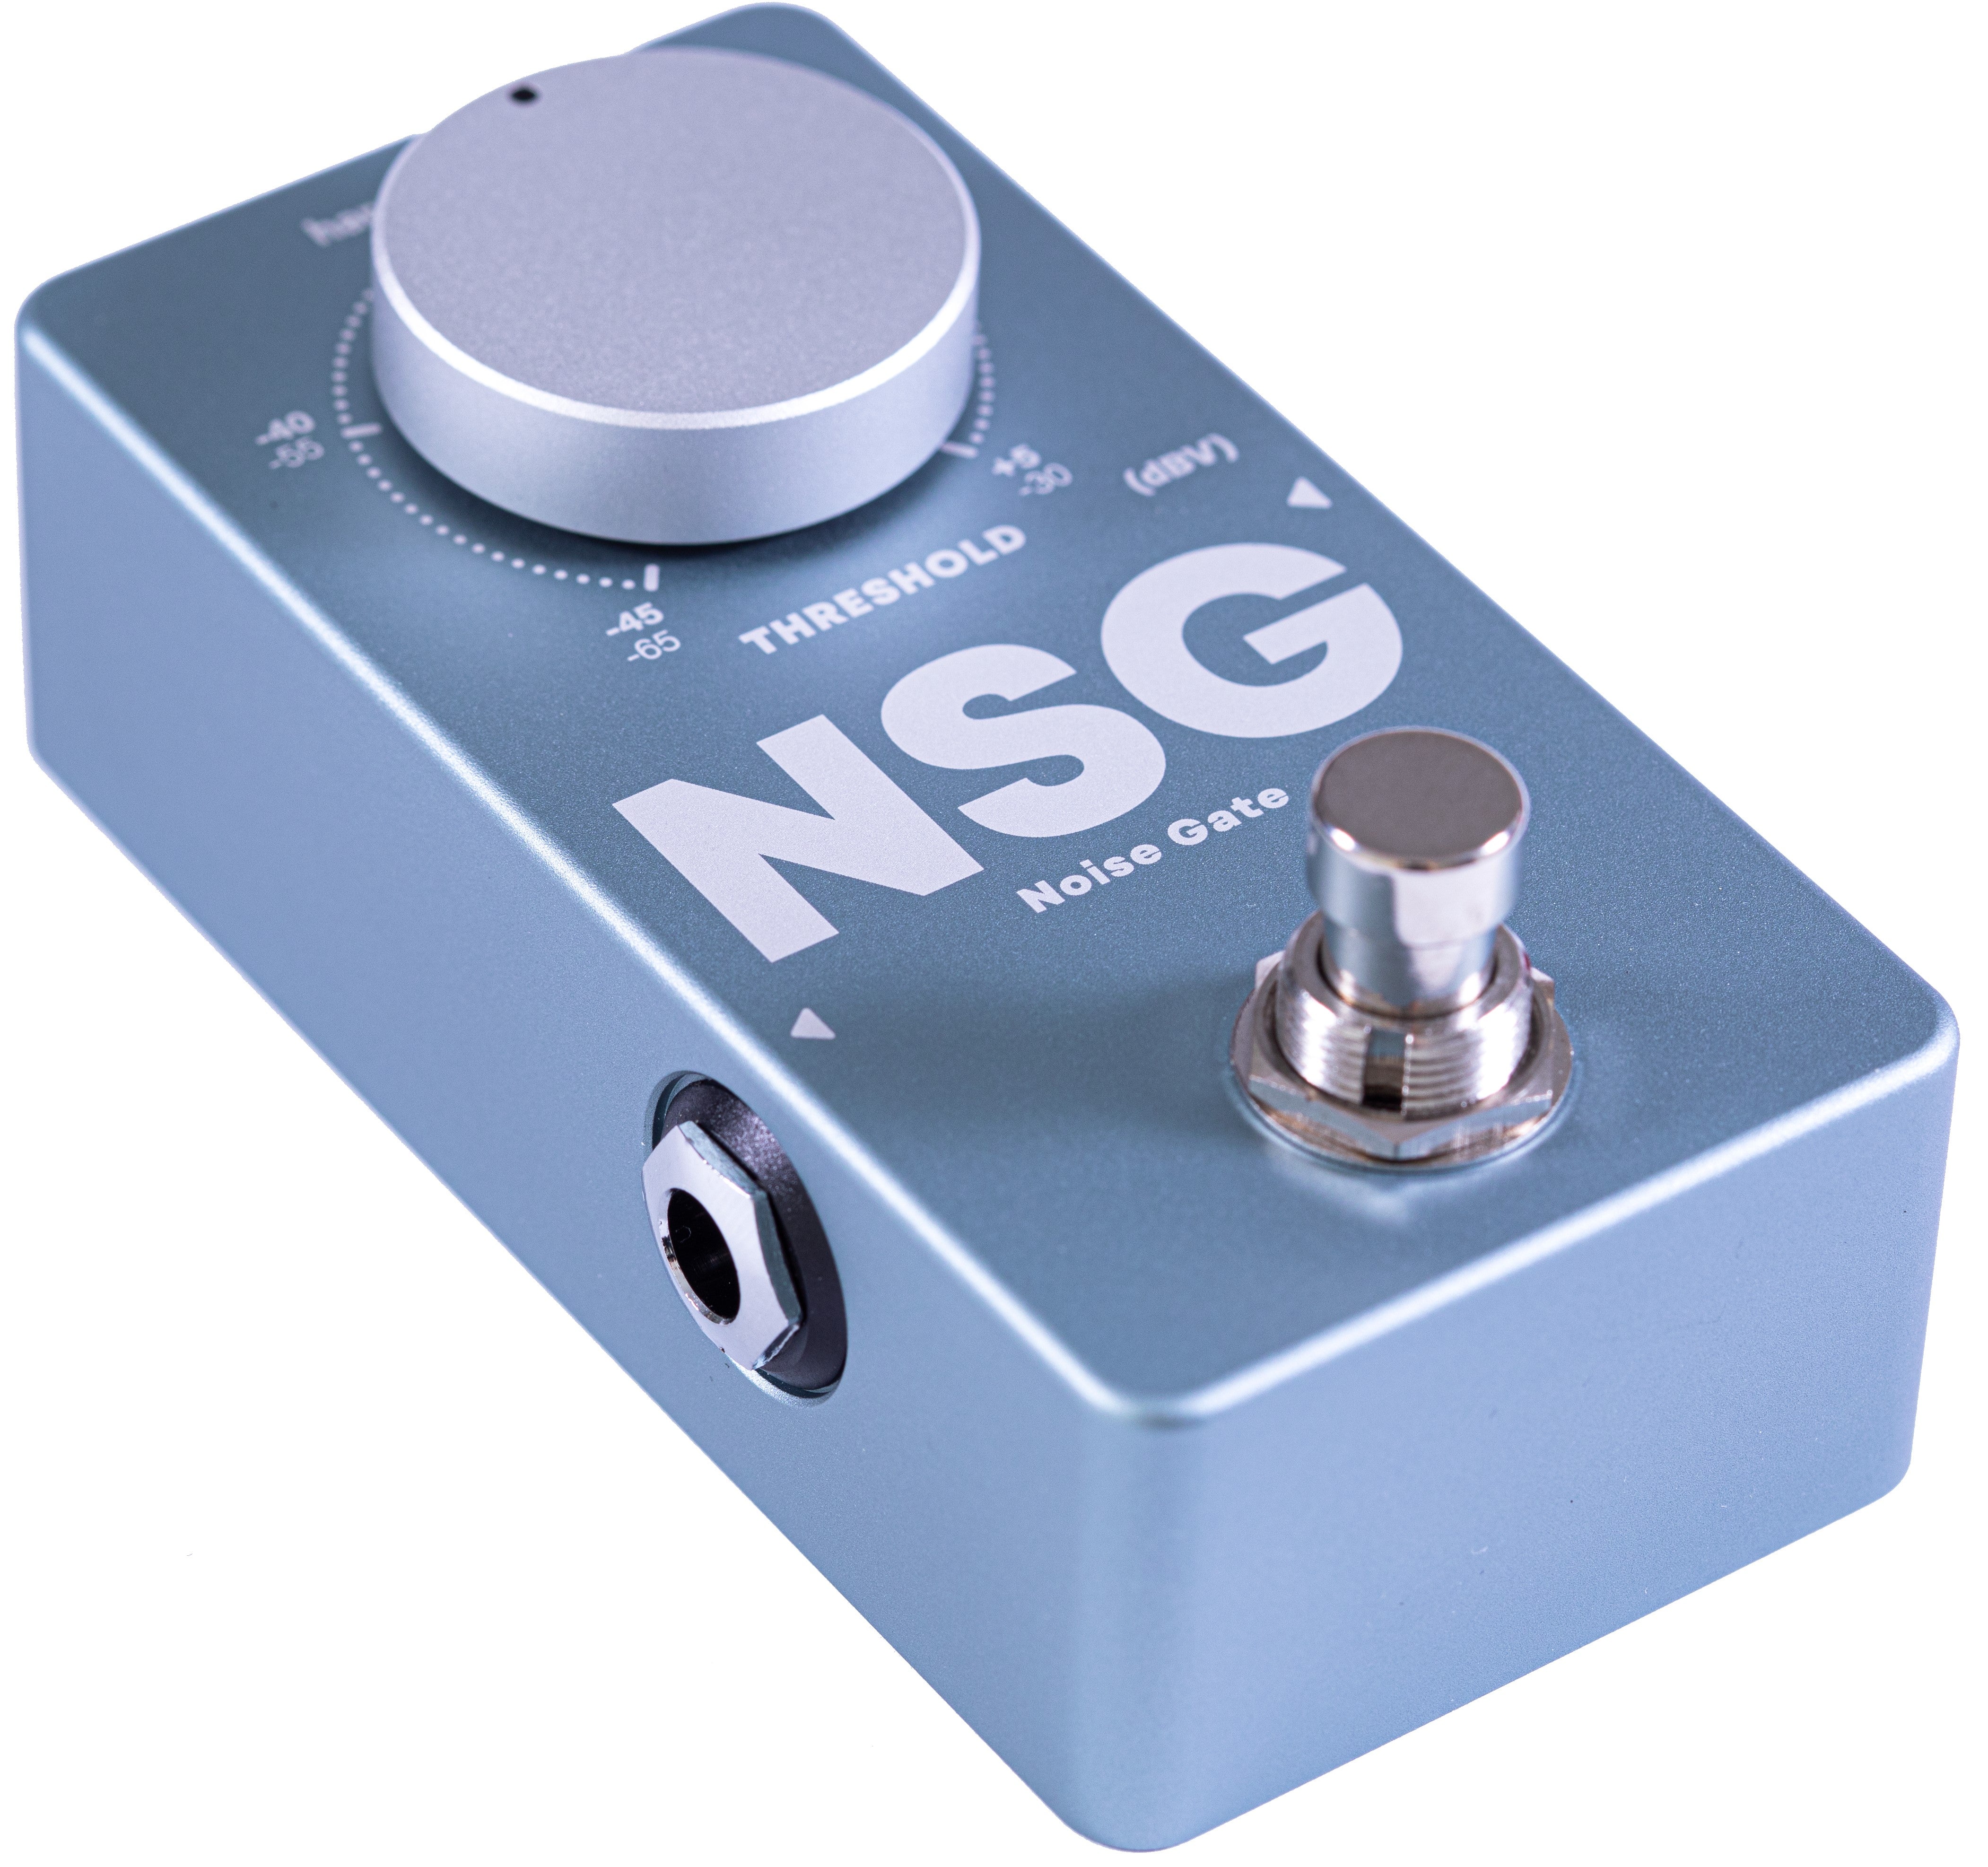 NSG Noisegate